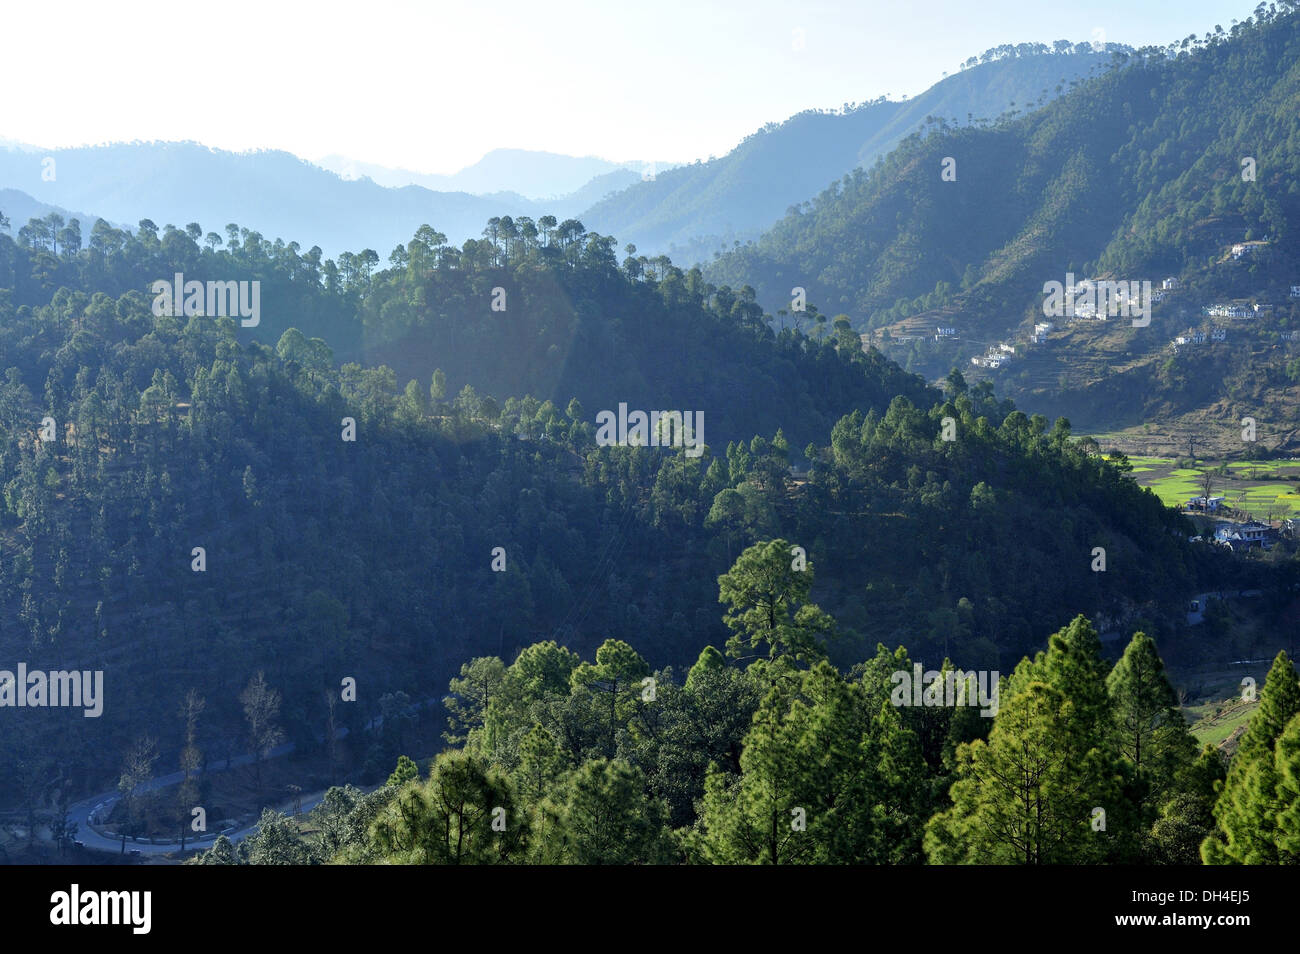 Verdant forest at kausani bageshwar uttarakhand India Asia Stock Photo